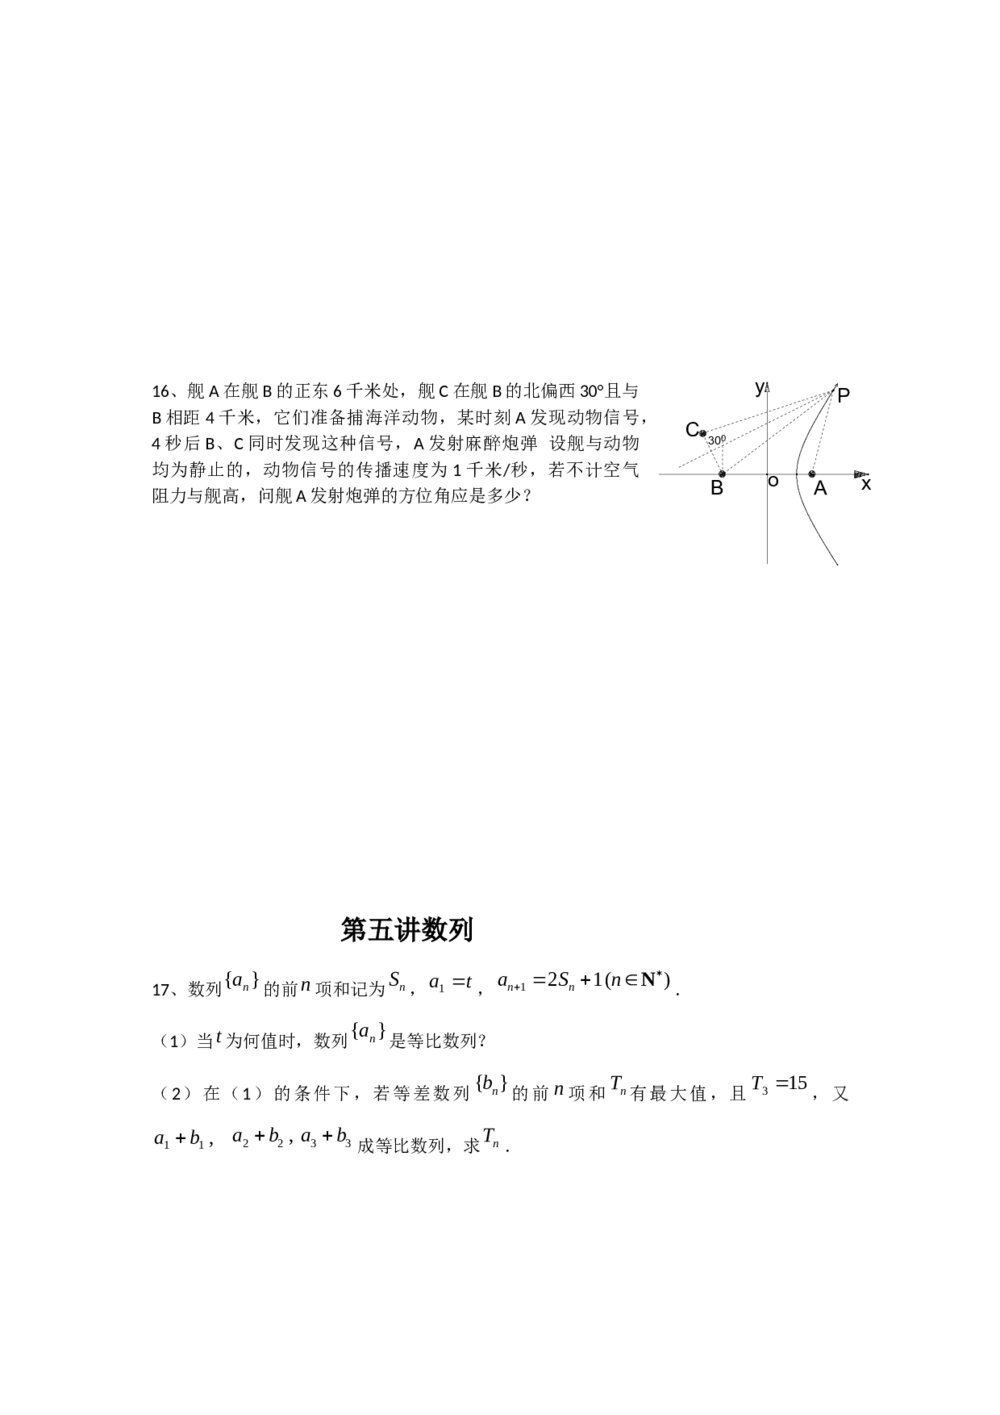 广东省广州市2012年高考考前查漏补缺题(数学文科A组)9